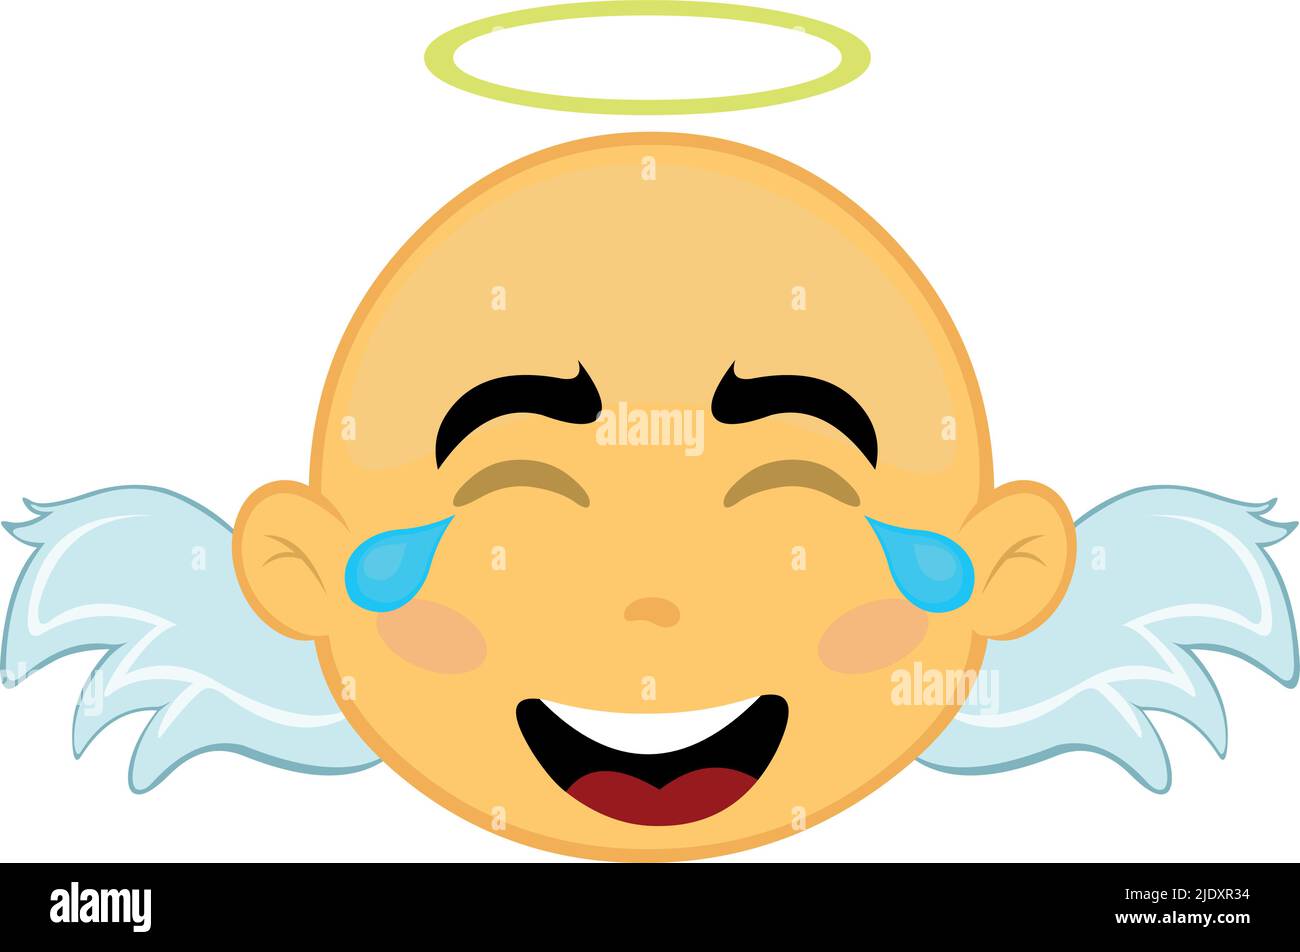 Vektor-Illustration eines gelben Zeichentrickengels Gesicht mit Tränen der Freude und Lachen Stock Vektor